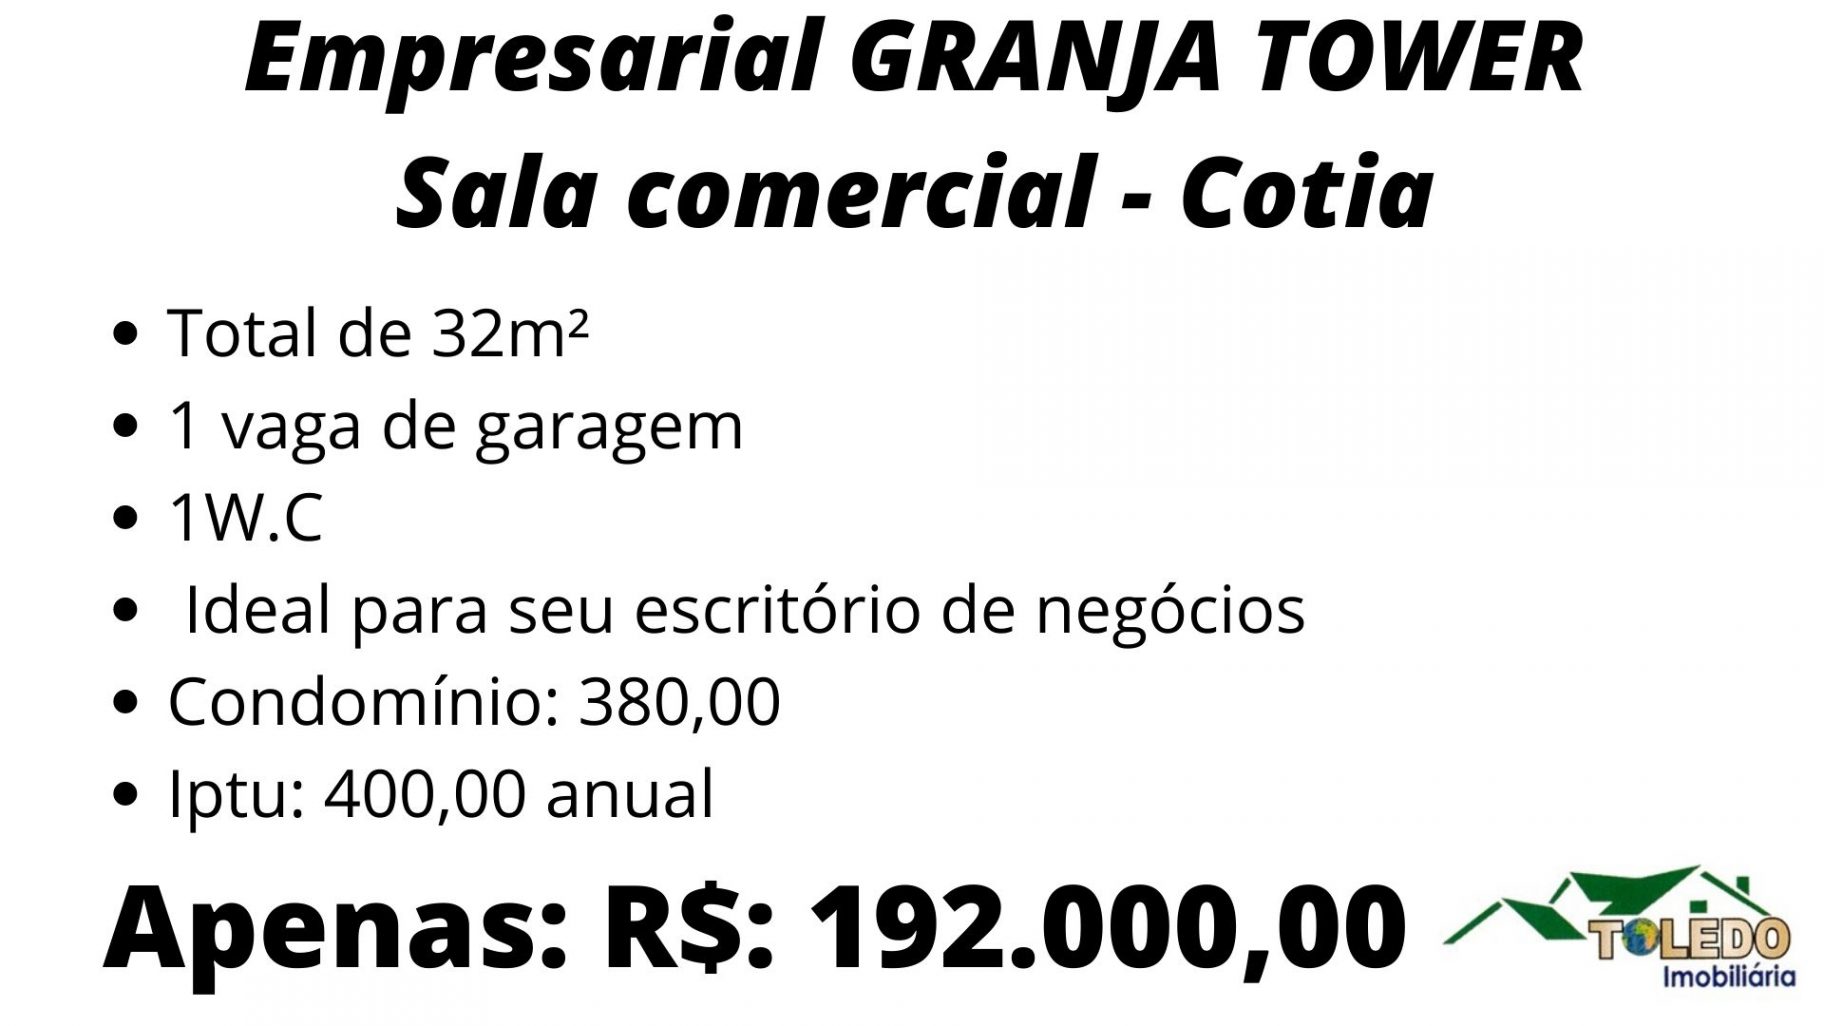 Empresarial GRANJA TOWER – Sala Comercial